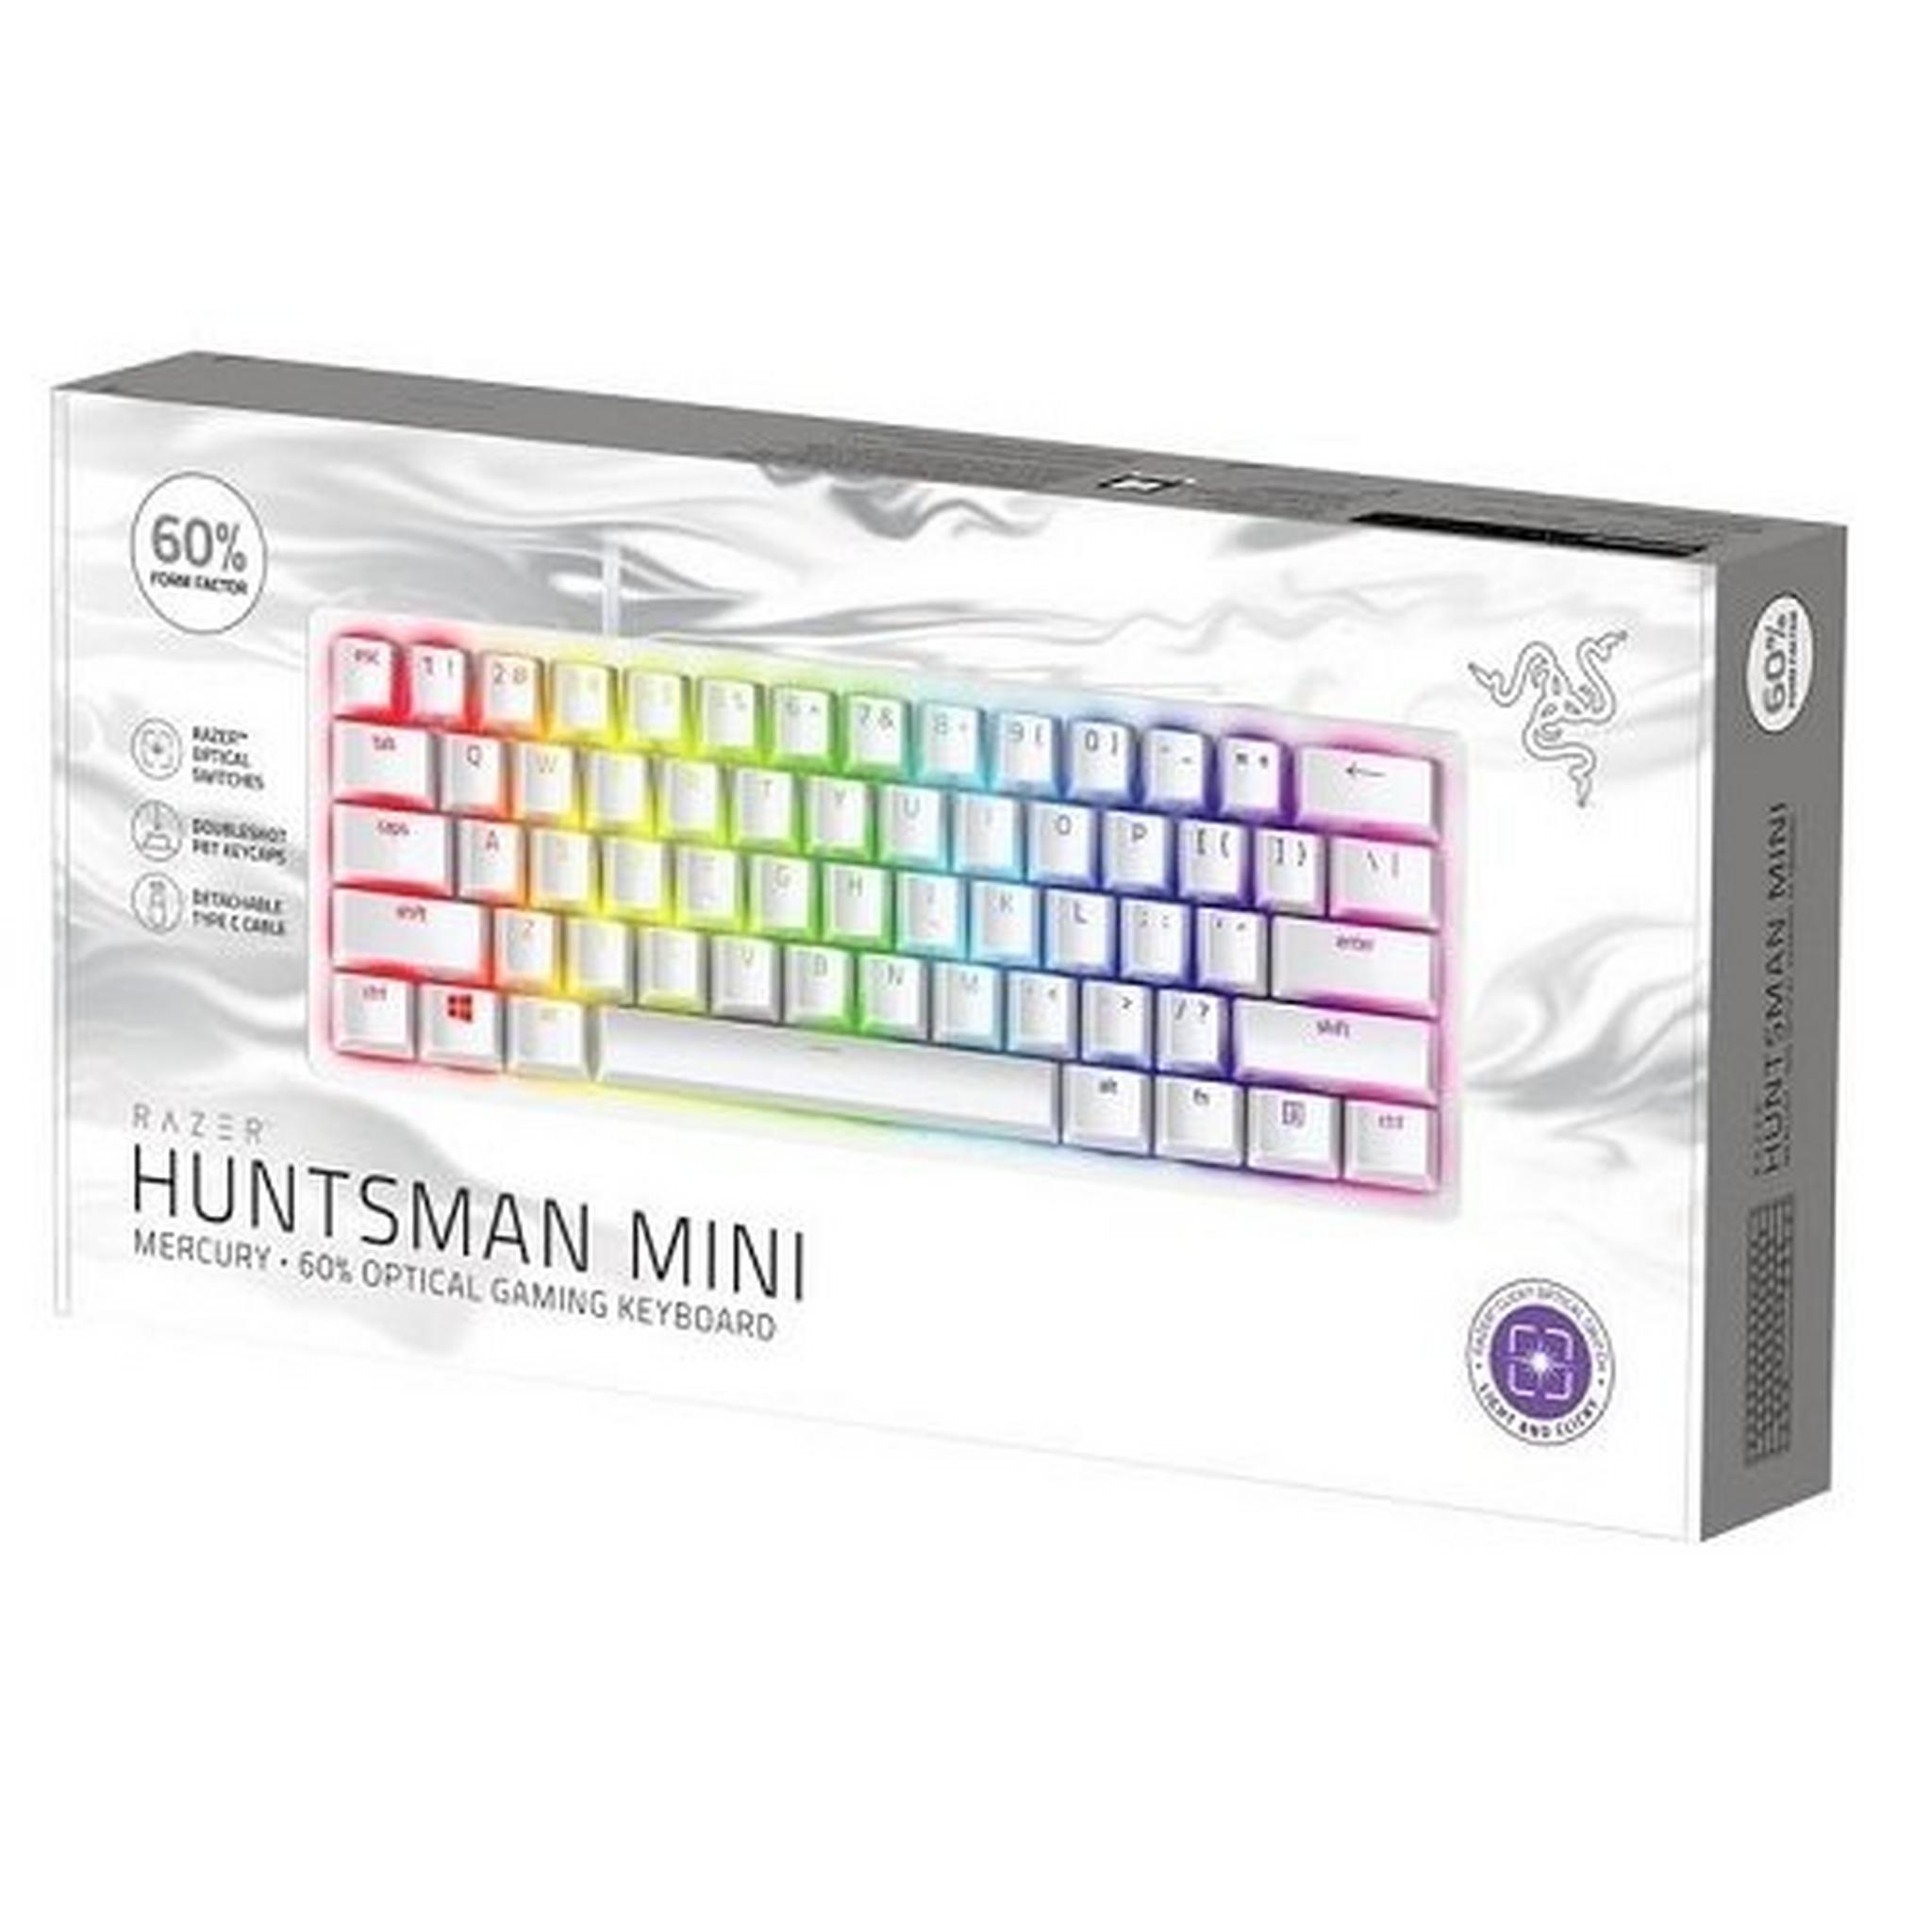 لوحة مفاتيح الألعاب السلكية ريزر هانتسمان ميني سويتش - مفاتيح حمراء - أبيض